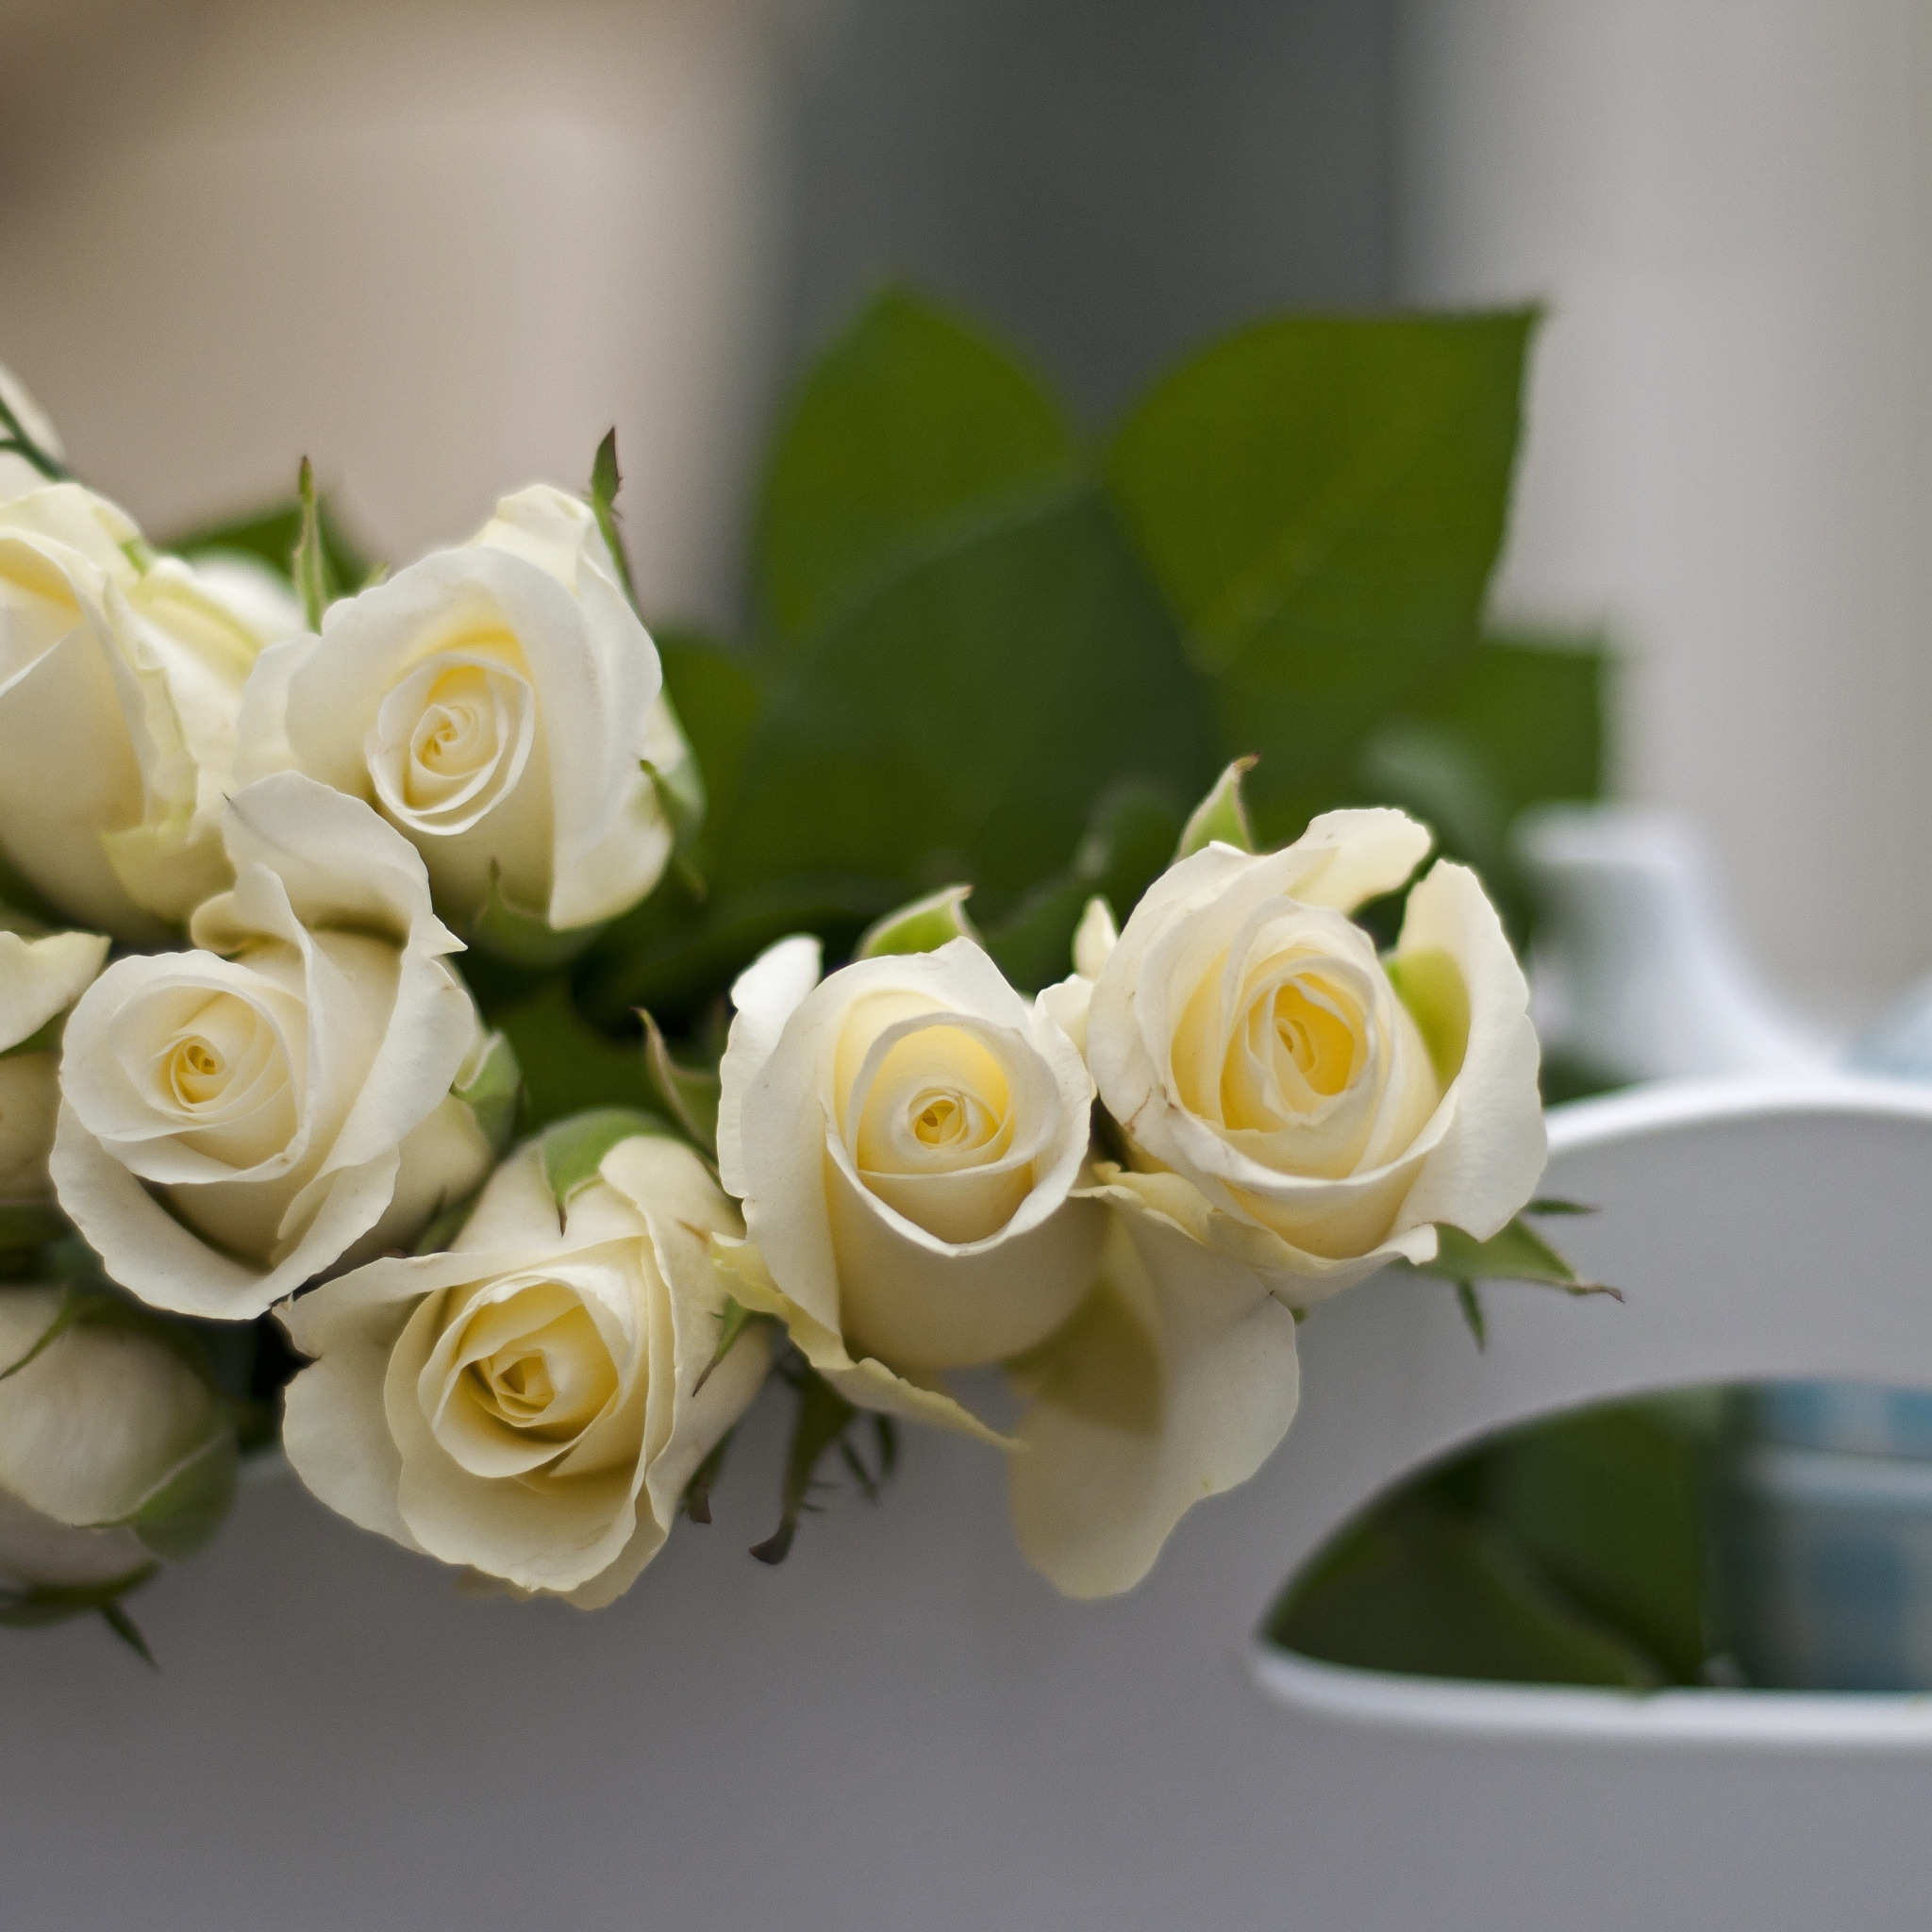 Самое хорошее пожелания девушке. Белые цветы. С добрым утром девушке. Пожелания с добрым утром любимой девушке. Букет белых роз на столе.